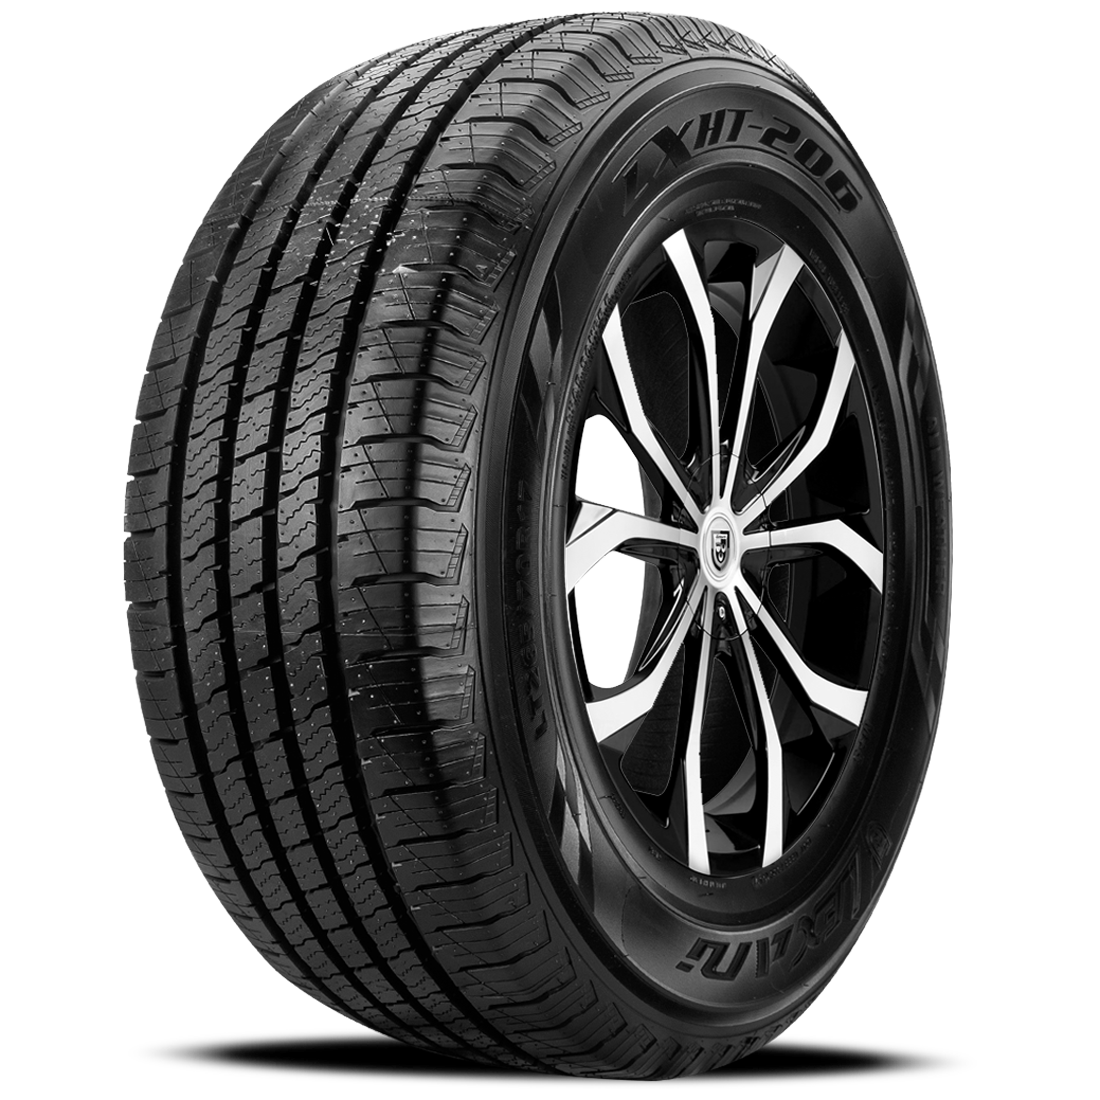 LEXANI LXHT-206 P215/60R17 (27X8.5R 17) Tires